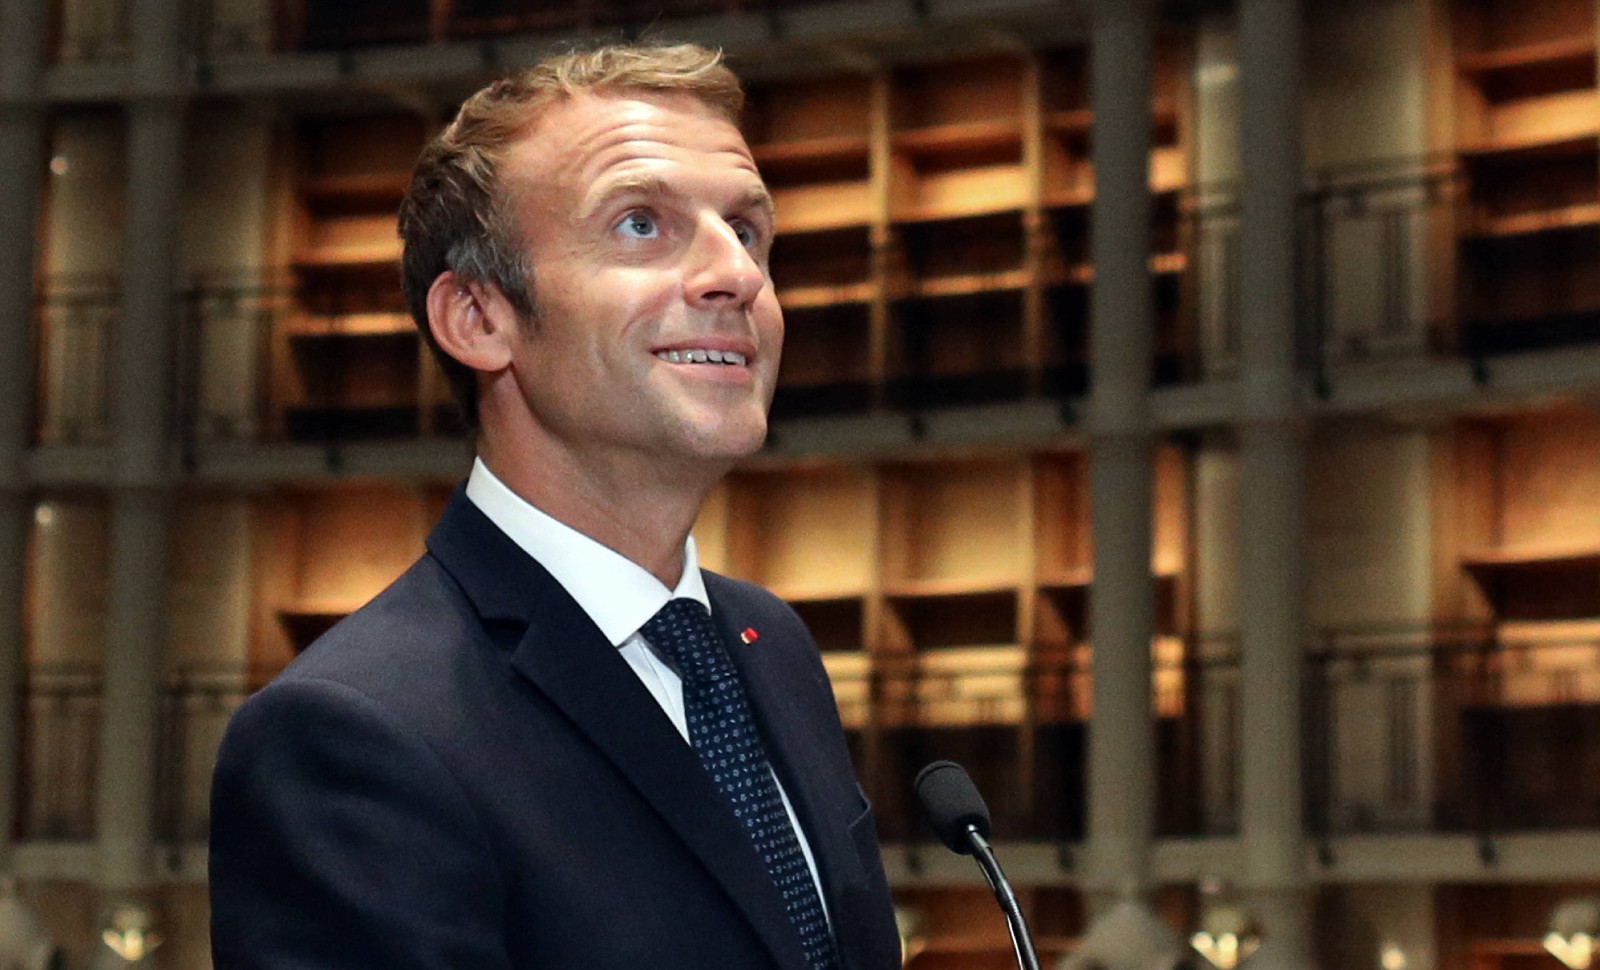 Le président Macron aimerait-il insulter les Français?